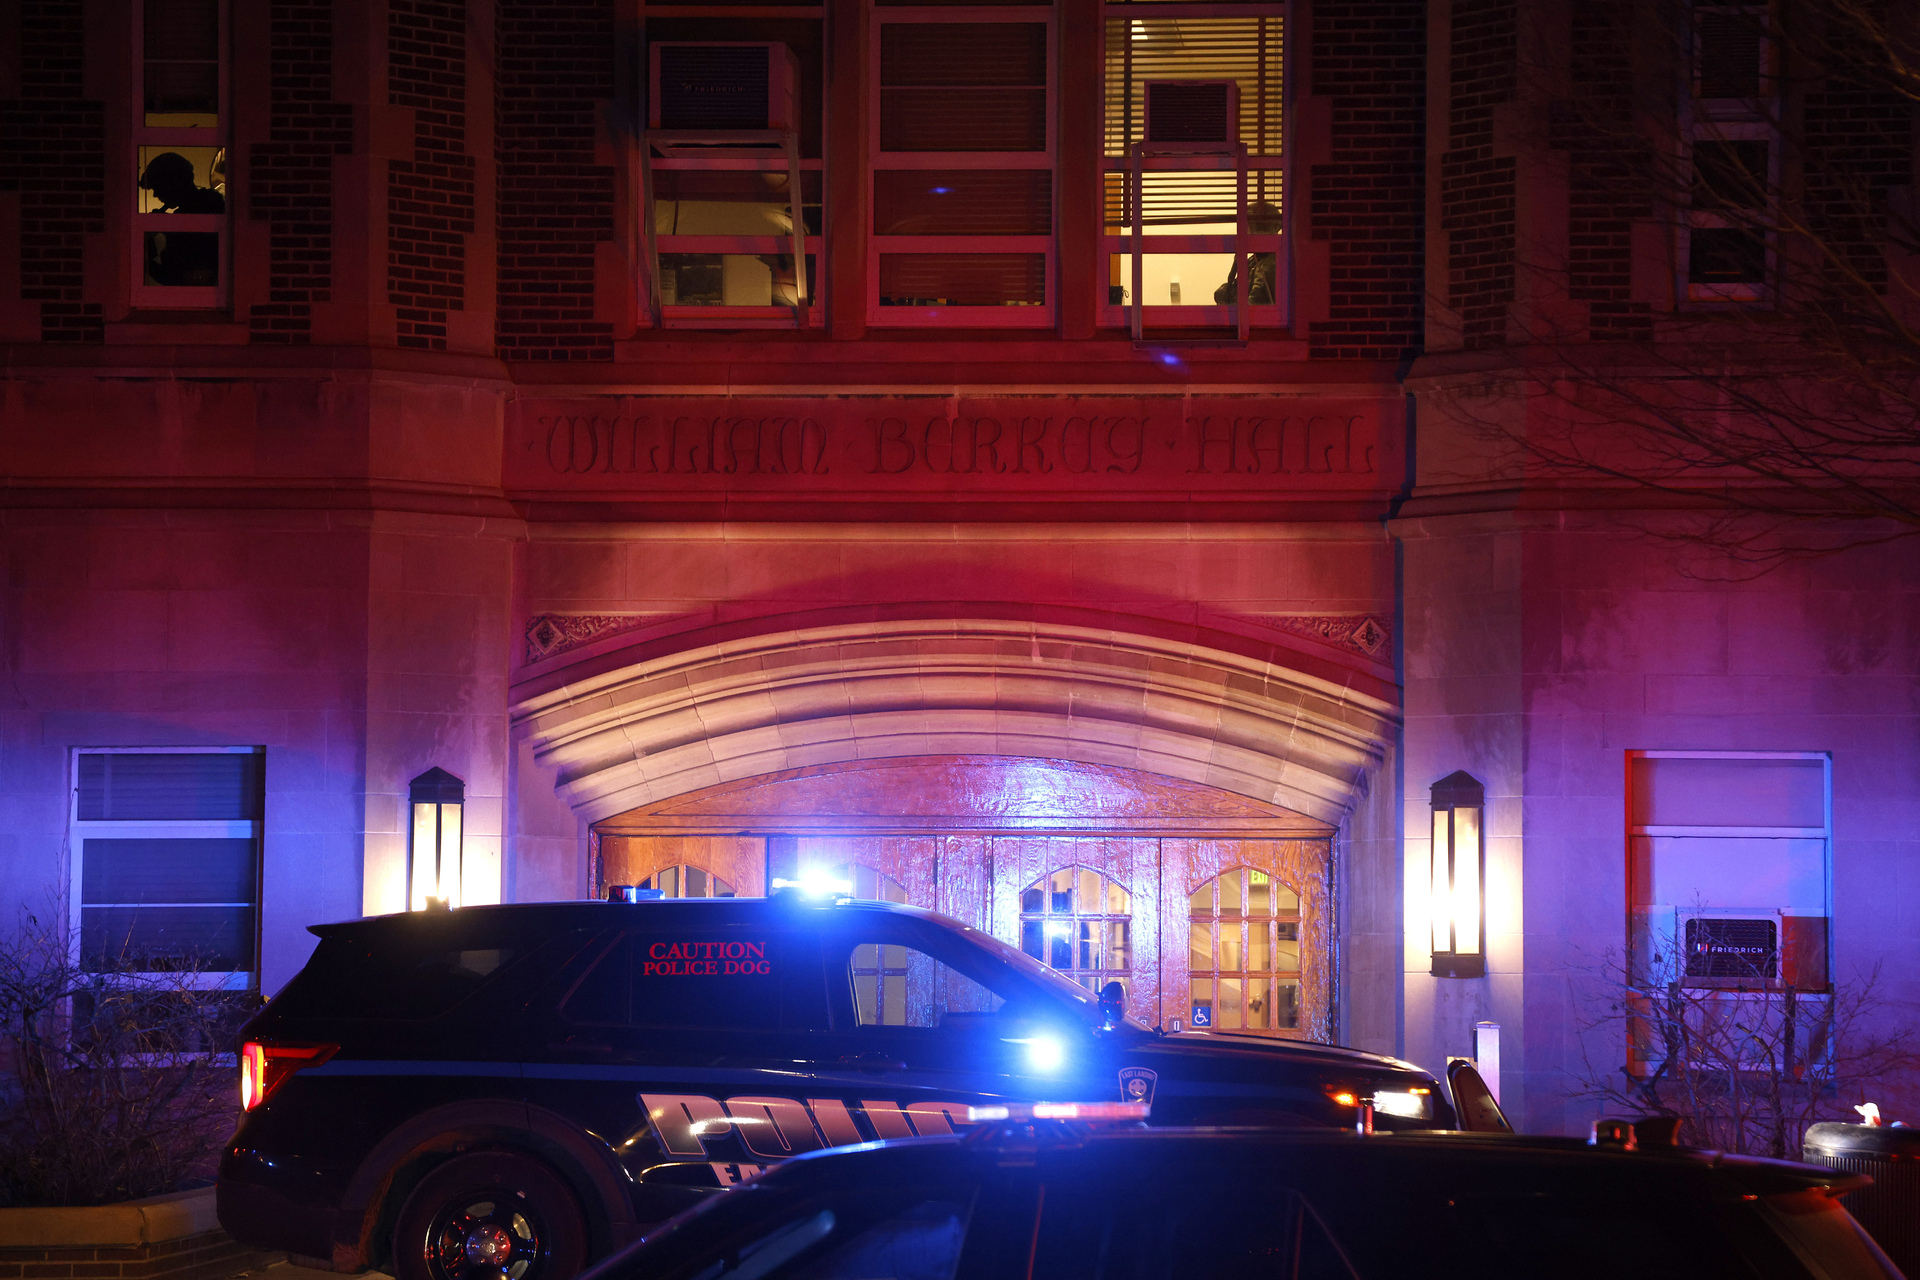 La Universidad de Michigan publicó en su web a las 01:05 hora local que el sospechoso había sido localizado muerto. (AP)